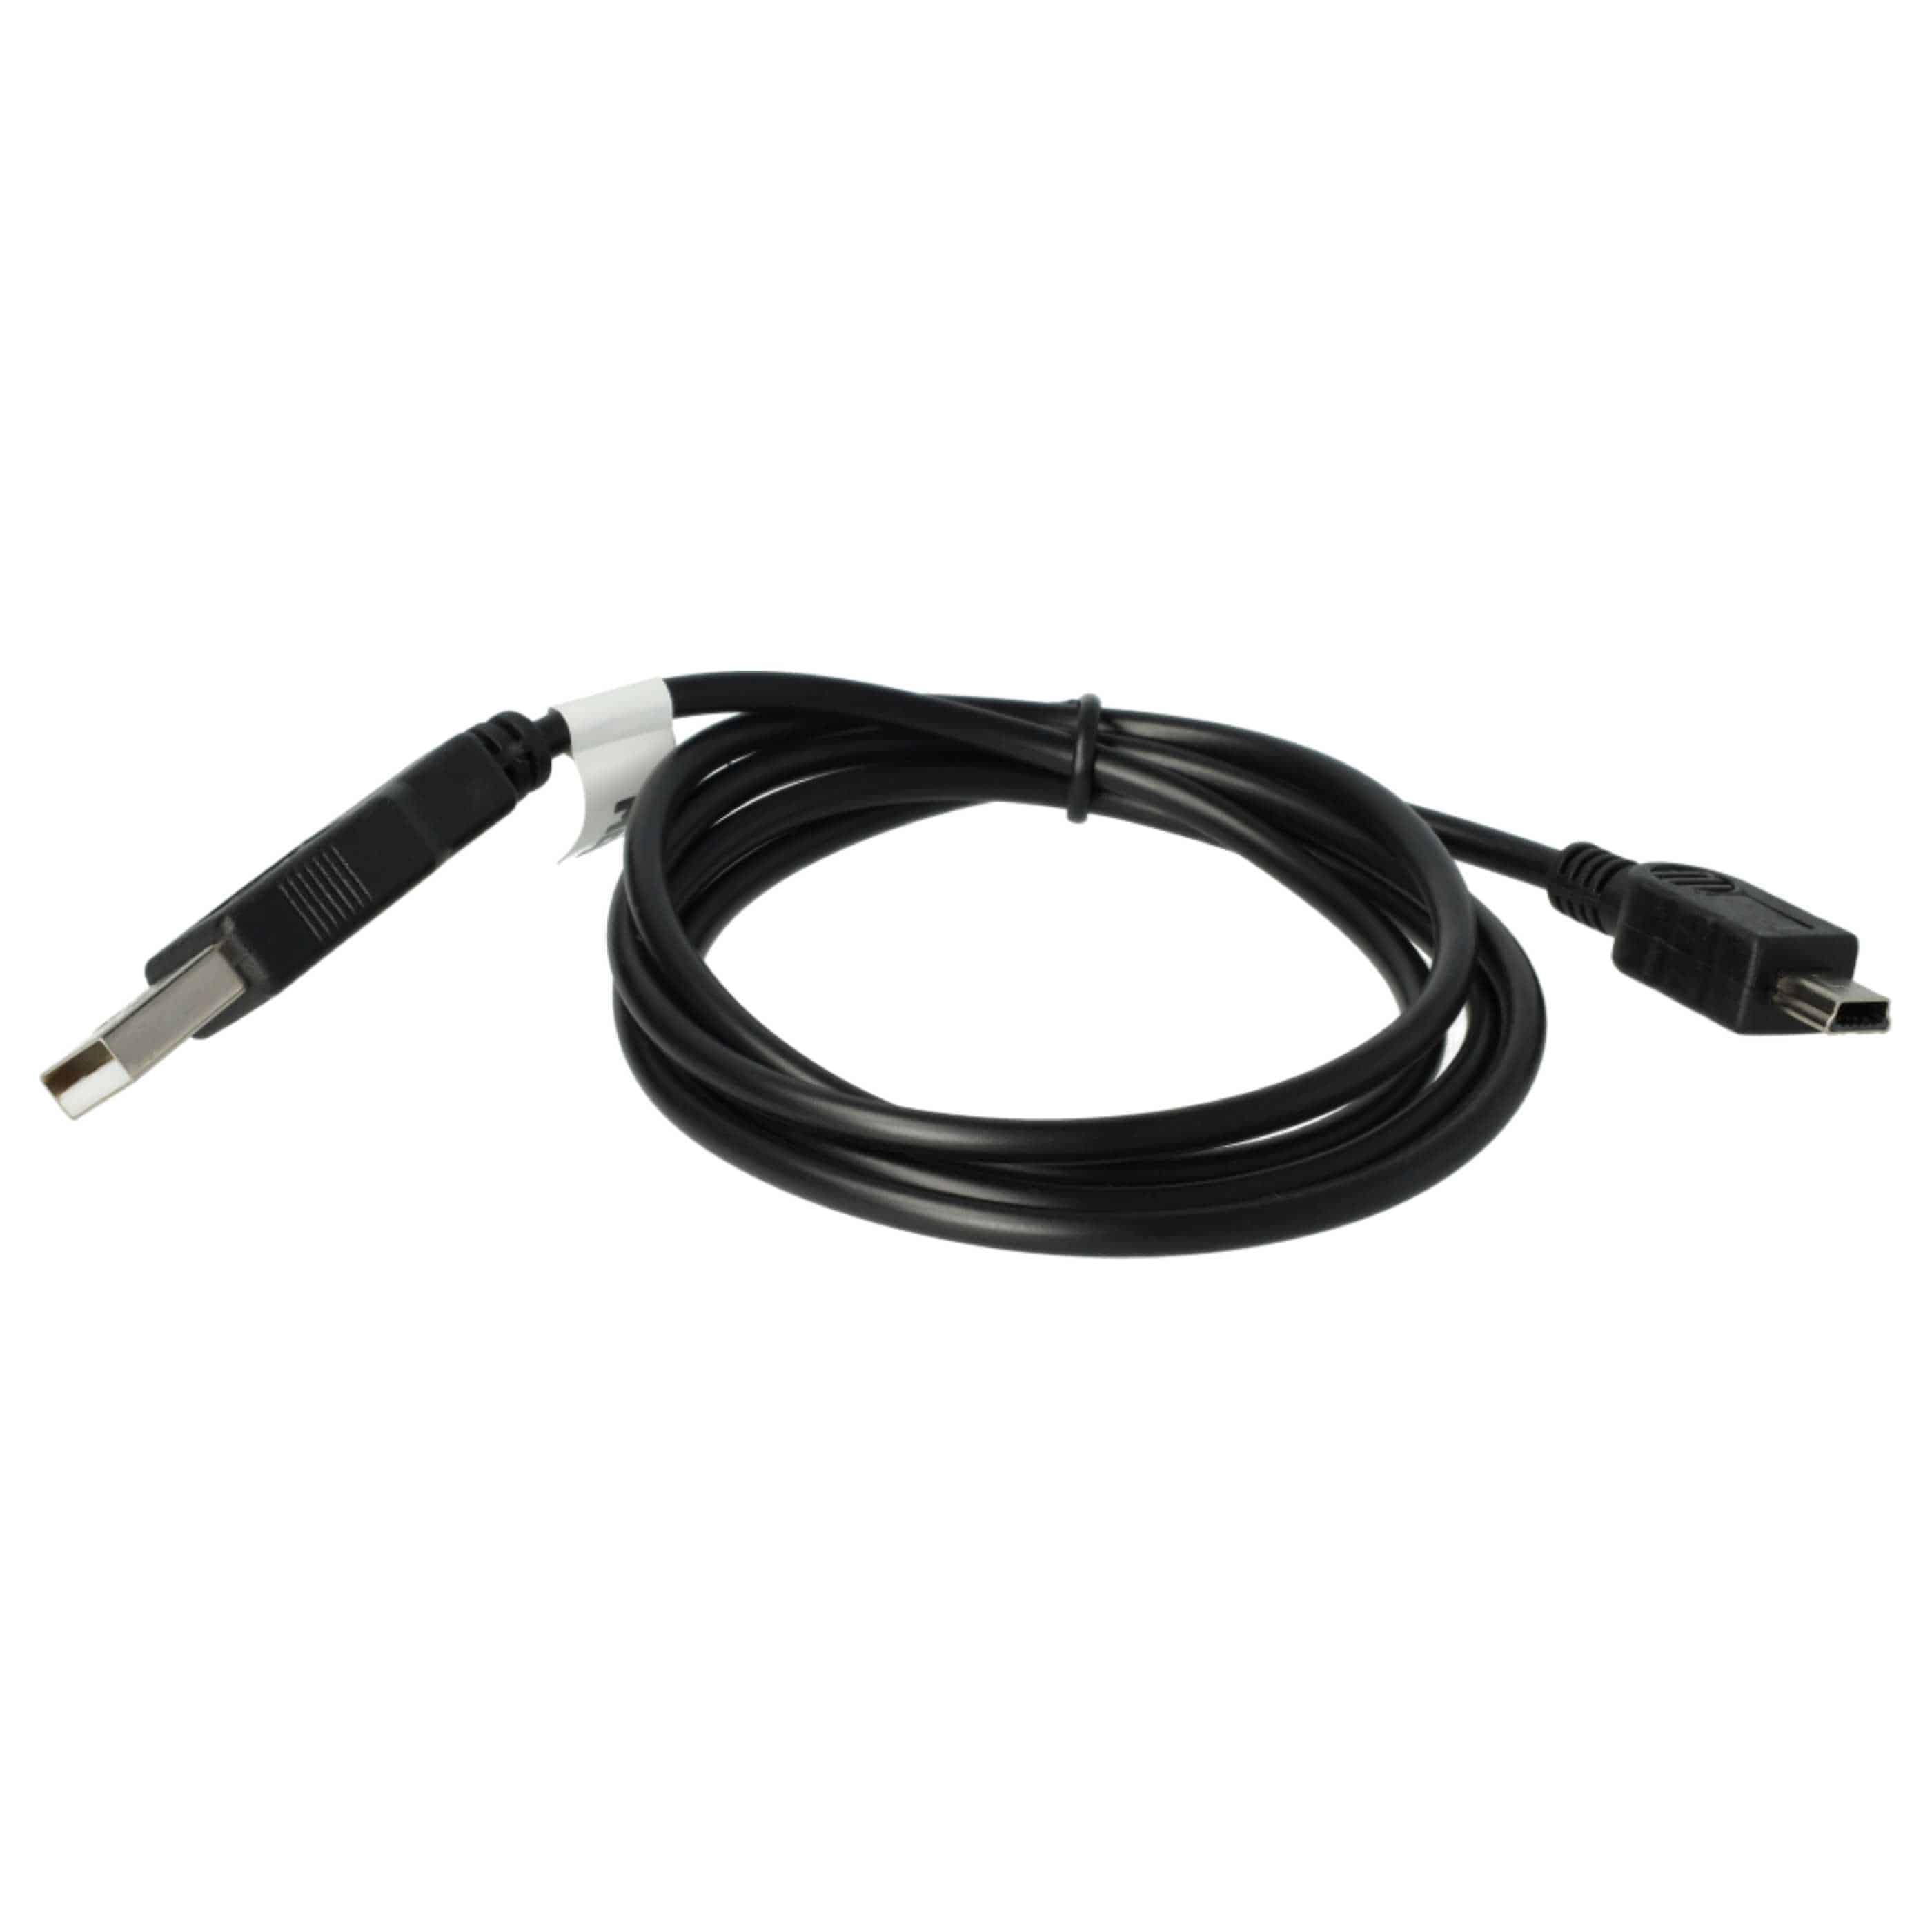 Universal USB Datenkabel 2-in-1 Ladekabel passend für alle gängige GPS Navi - 100cm Schwarz